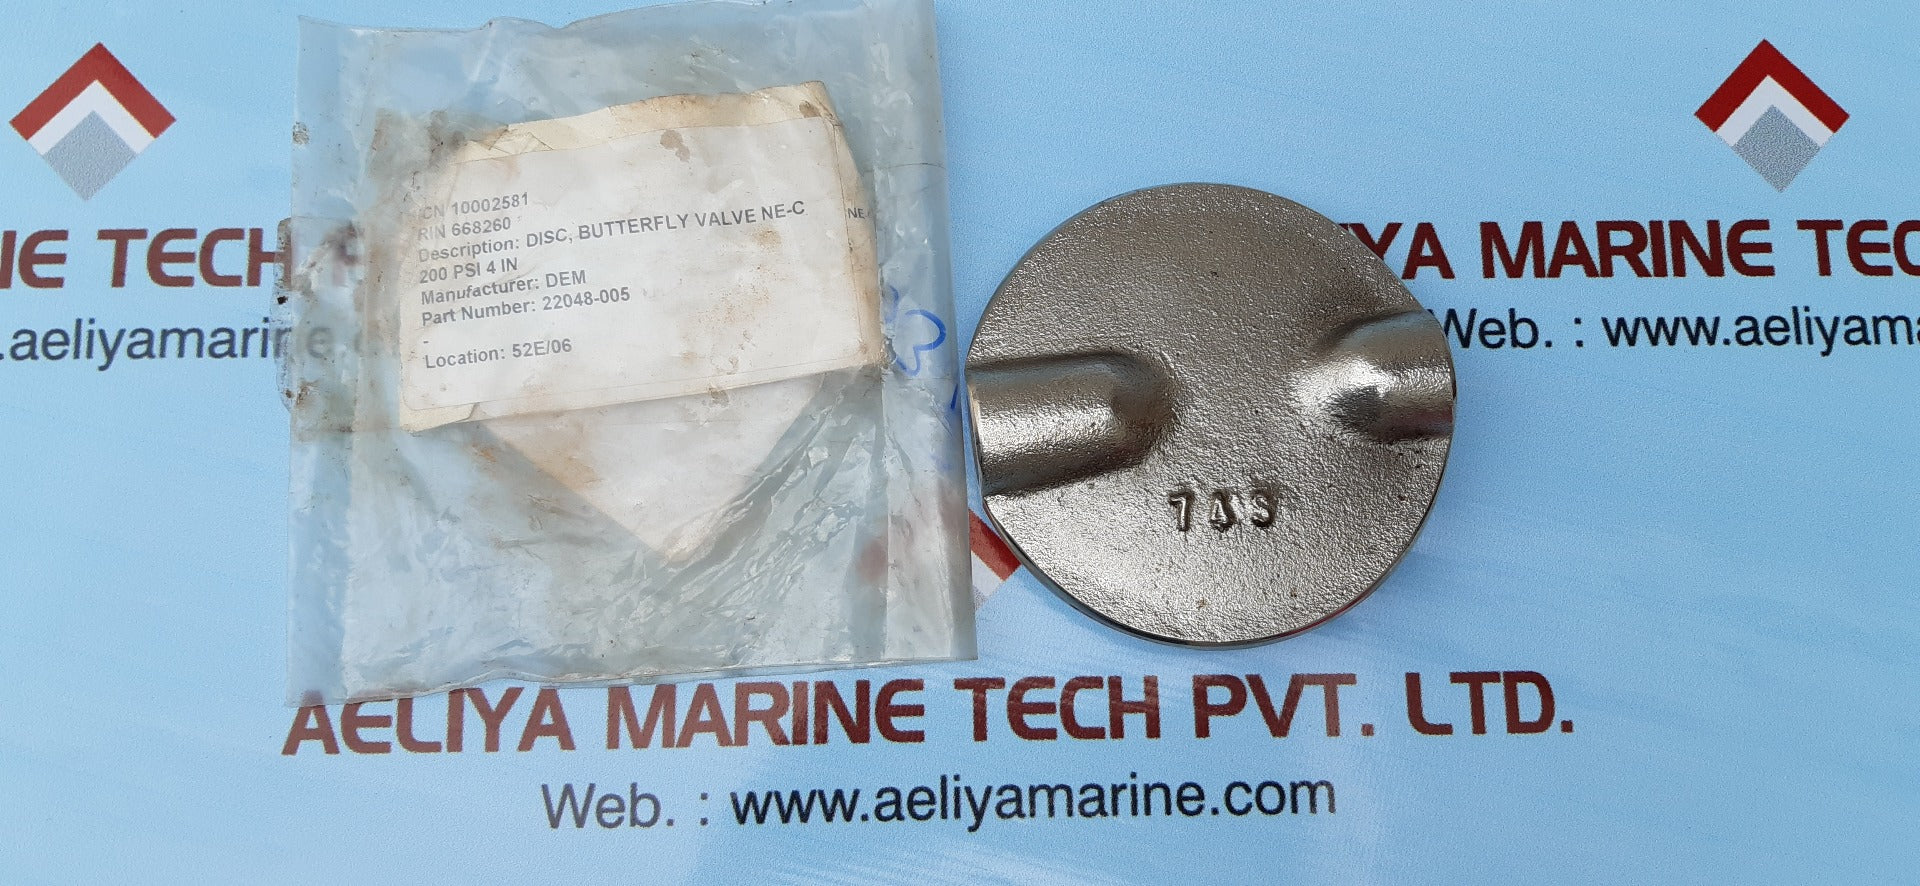 Butterfly valve disc j022048